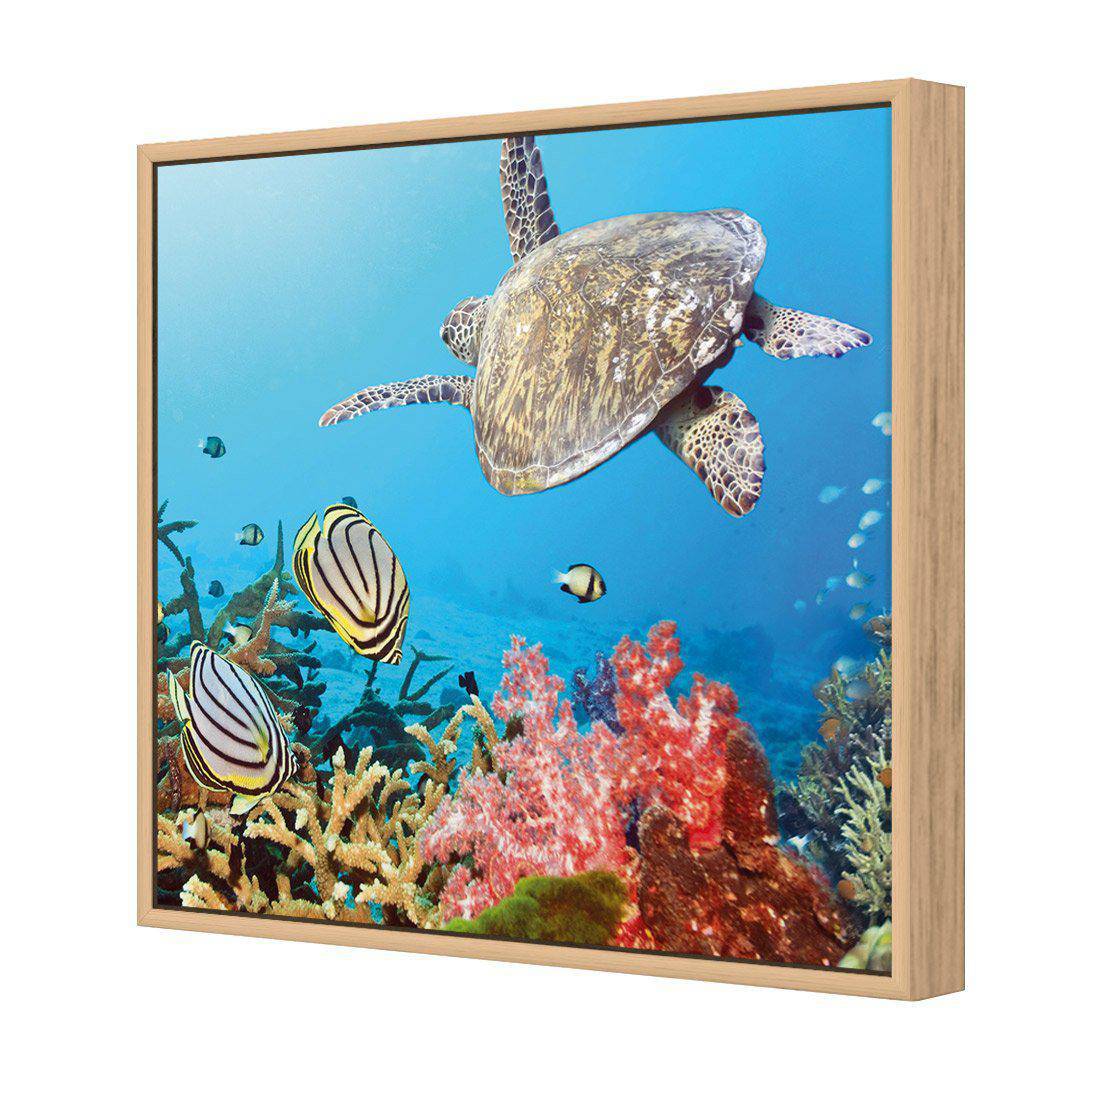 Coral Sea, Square Canvas Art-Canvas-Wall Art Designs-30x30cm-Canvas - Oak Frame-Wall Art Designs